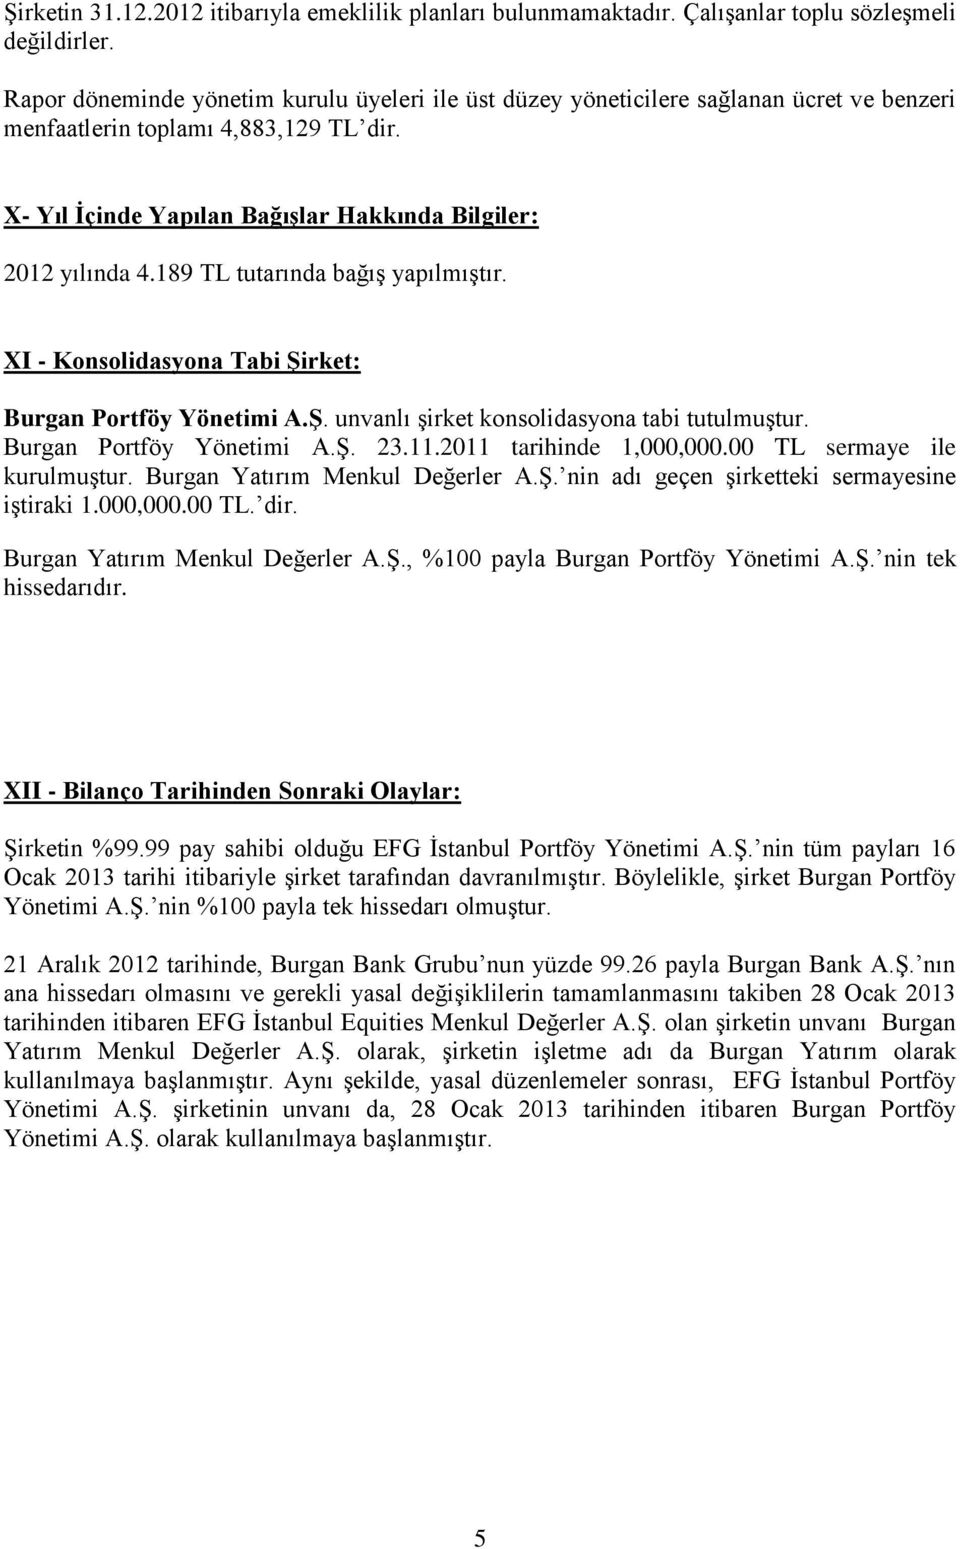 189 TL tutarında bağış yapılmıştır. XI - Konsolidasyona Tabi Şirket: Burgan Portföy Yönetimi A.Ş. unvanlı şirket konsolidasyona tabi tutulmuştur. Burgan Portföy Yönetimi A.Ş. 23.11.